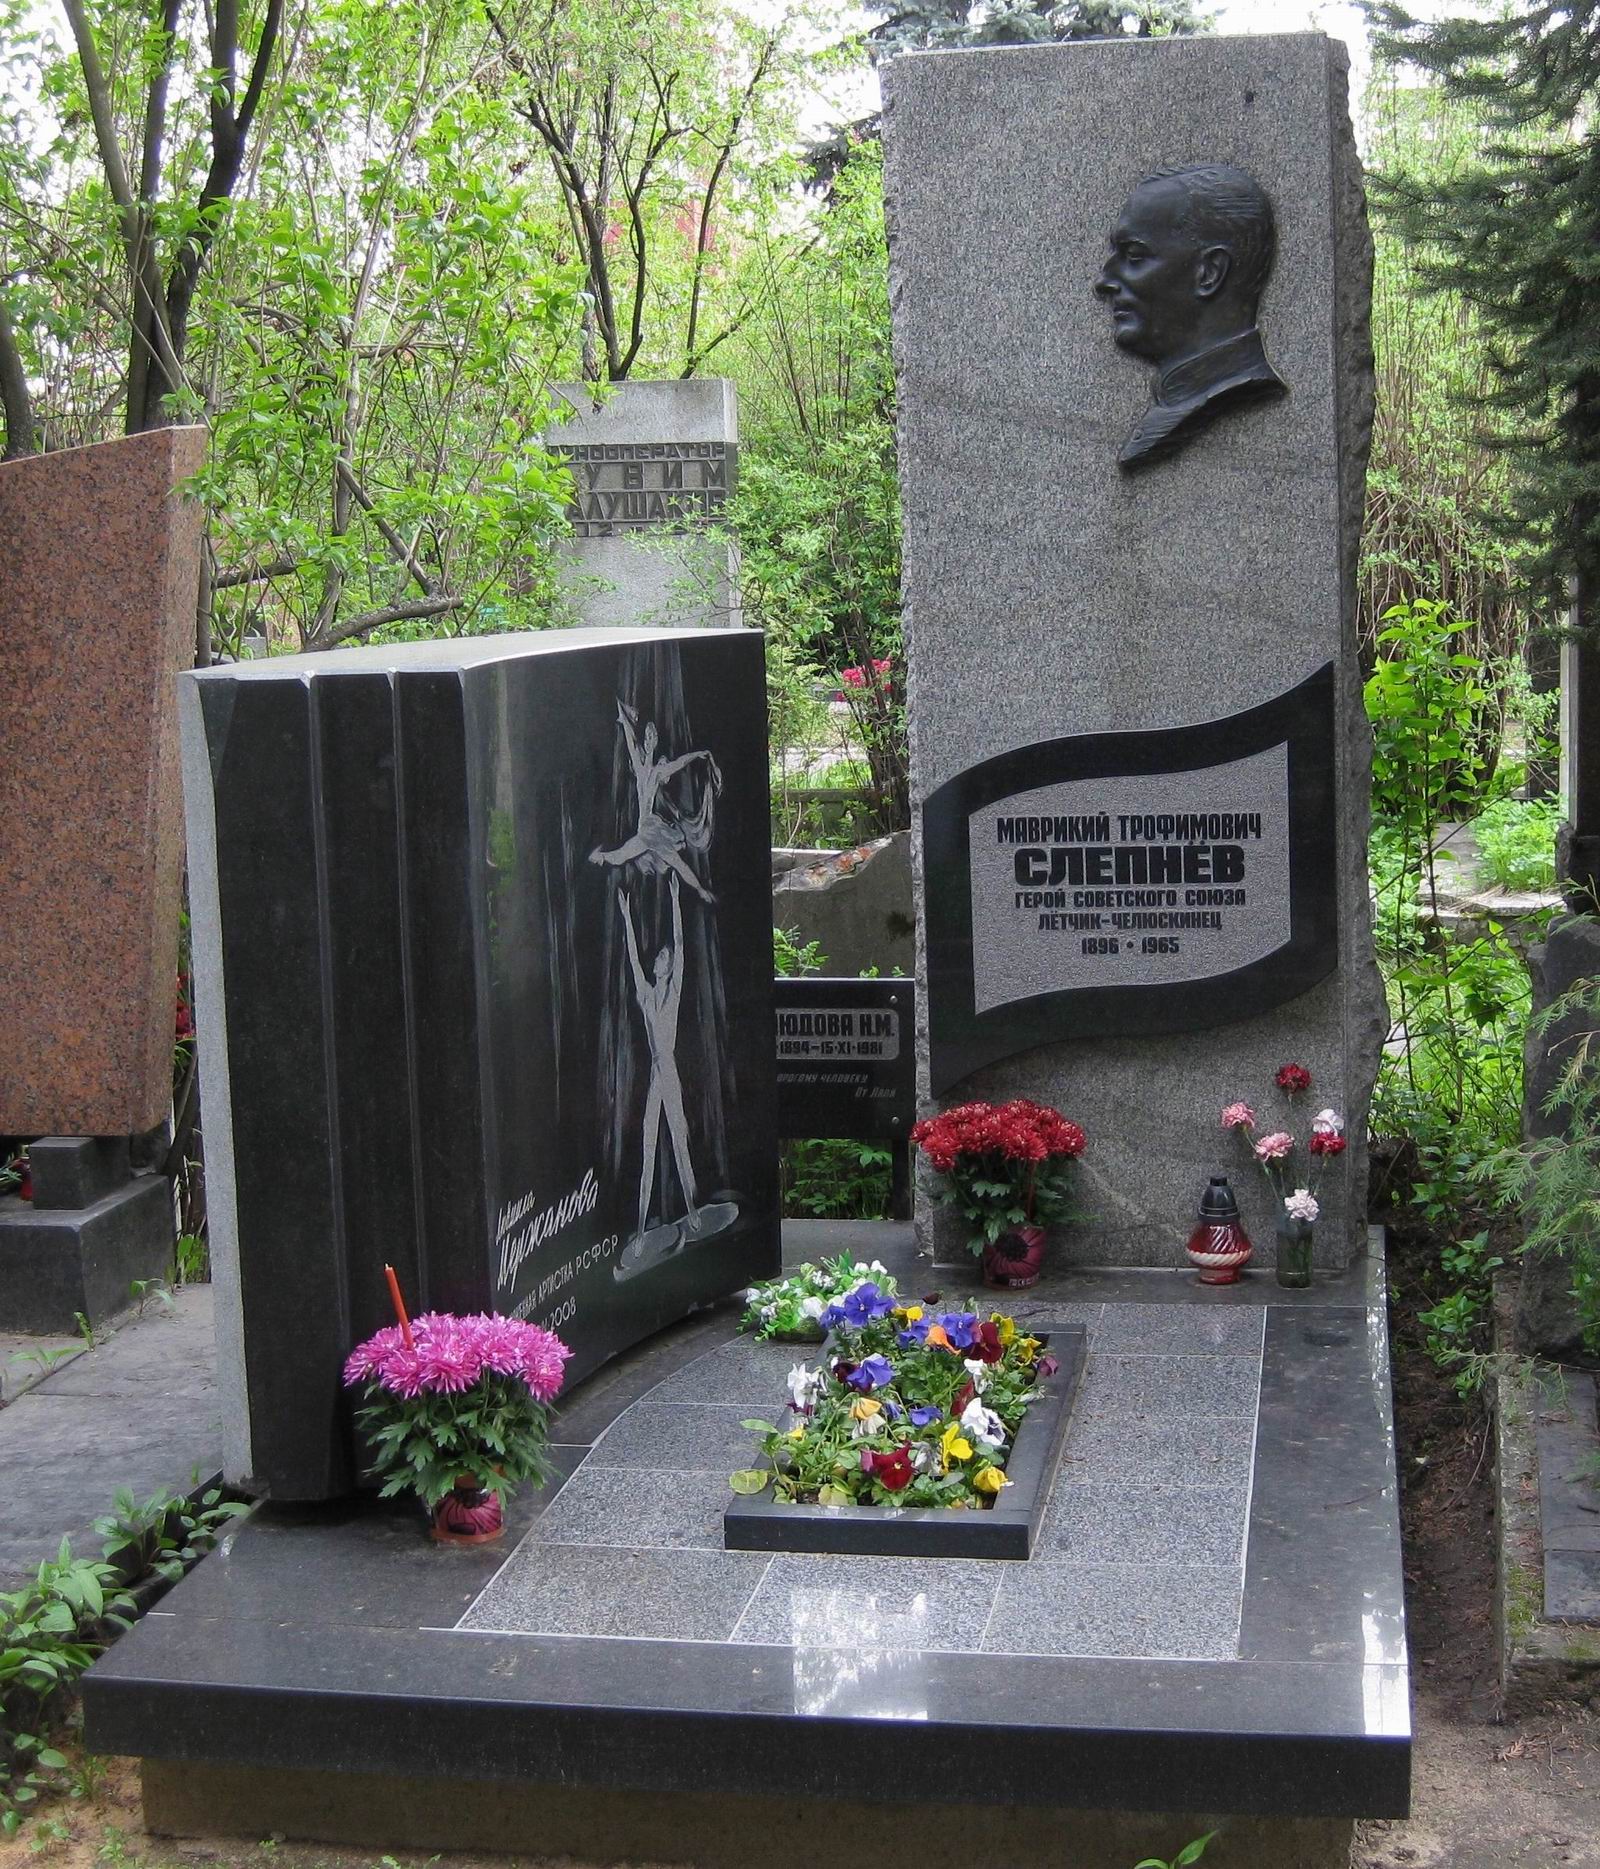 Памятник на могиле Слепнёва М.Т. (1896-1965), ск. Л.Кардашова, на Новодевичьем кладбище (6-12-8). Нажмите левую кнопку мыши чтобы увидеть фрагмент памятника.